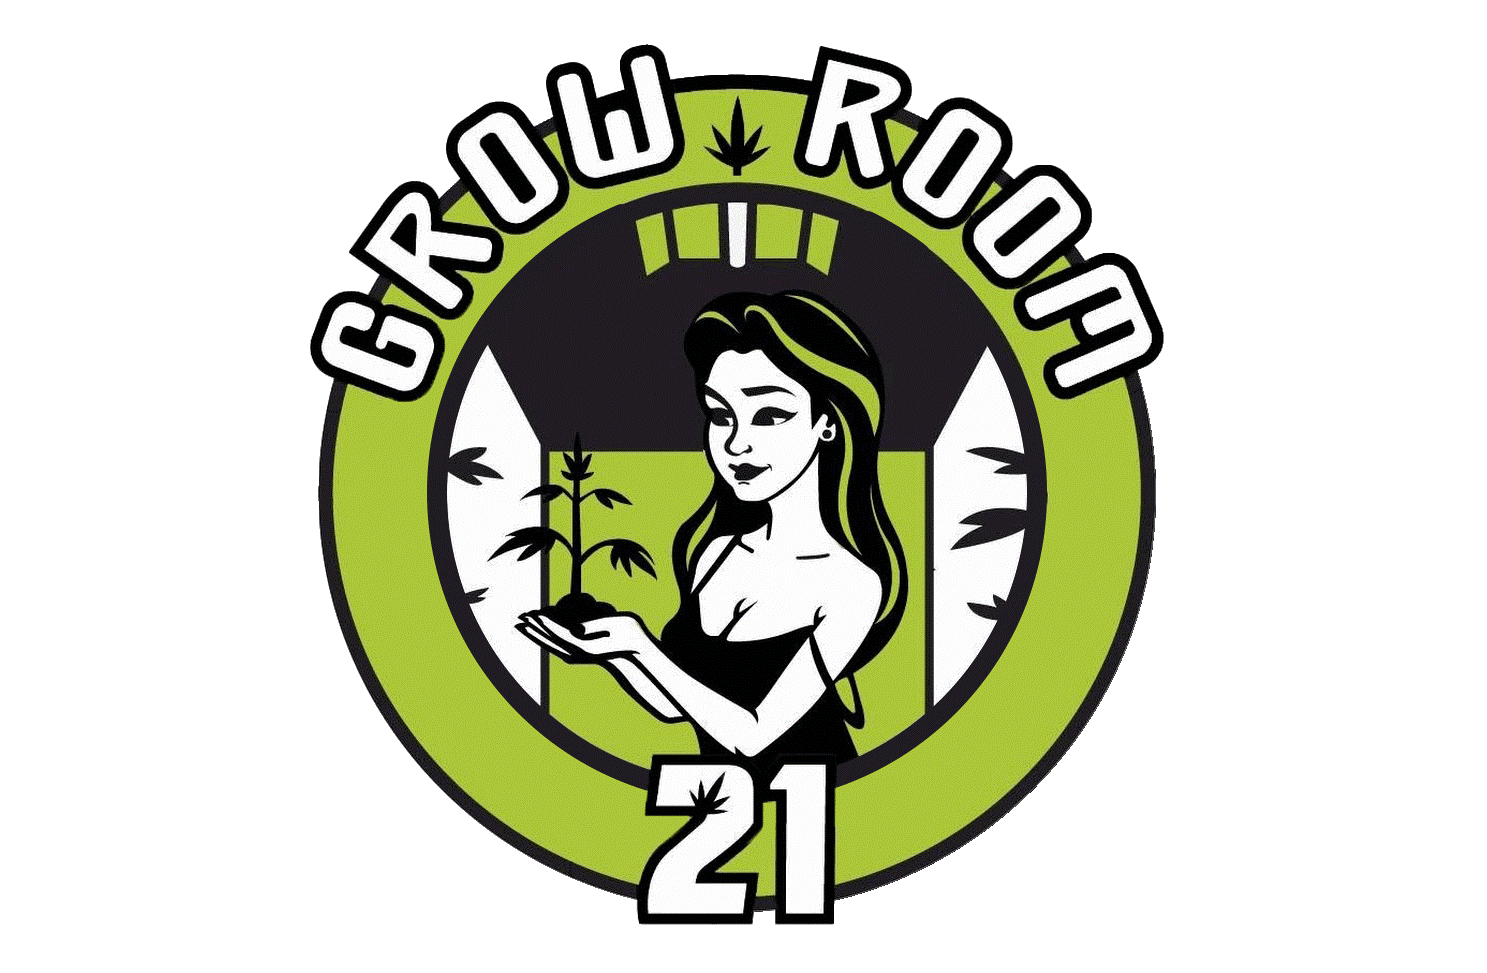 GrowRoom21 - Your Growshop in Vienna